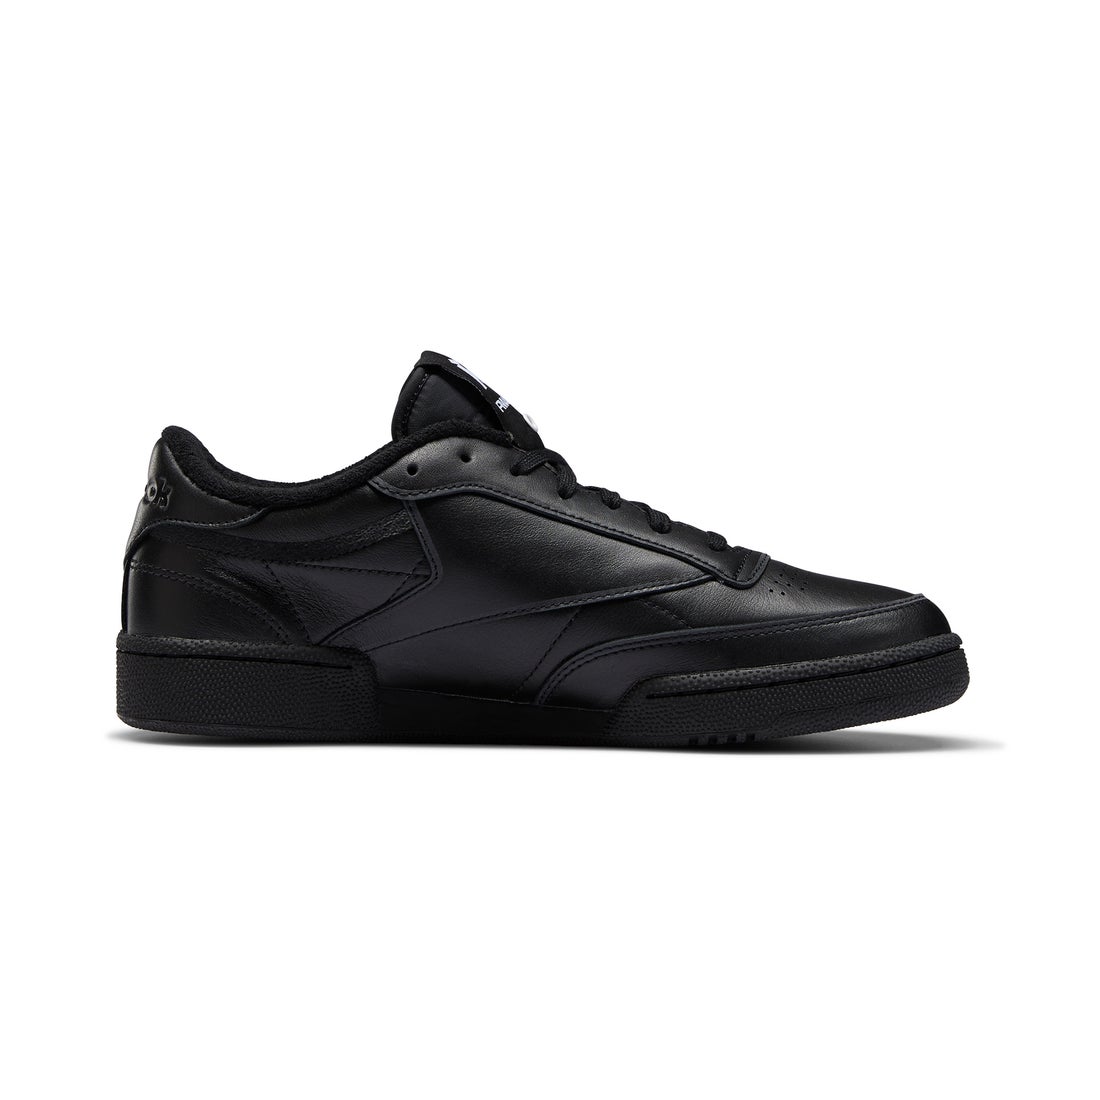 Reebok Men's Ace Fashion Sneaker,Black/Pure Silver/Rivet Grey/Royal 